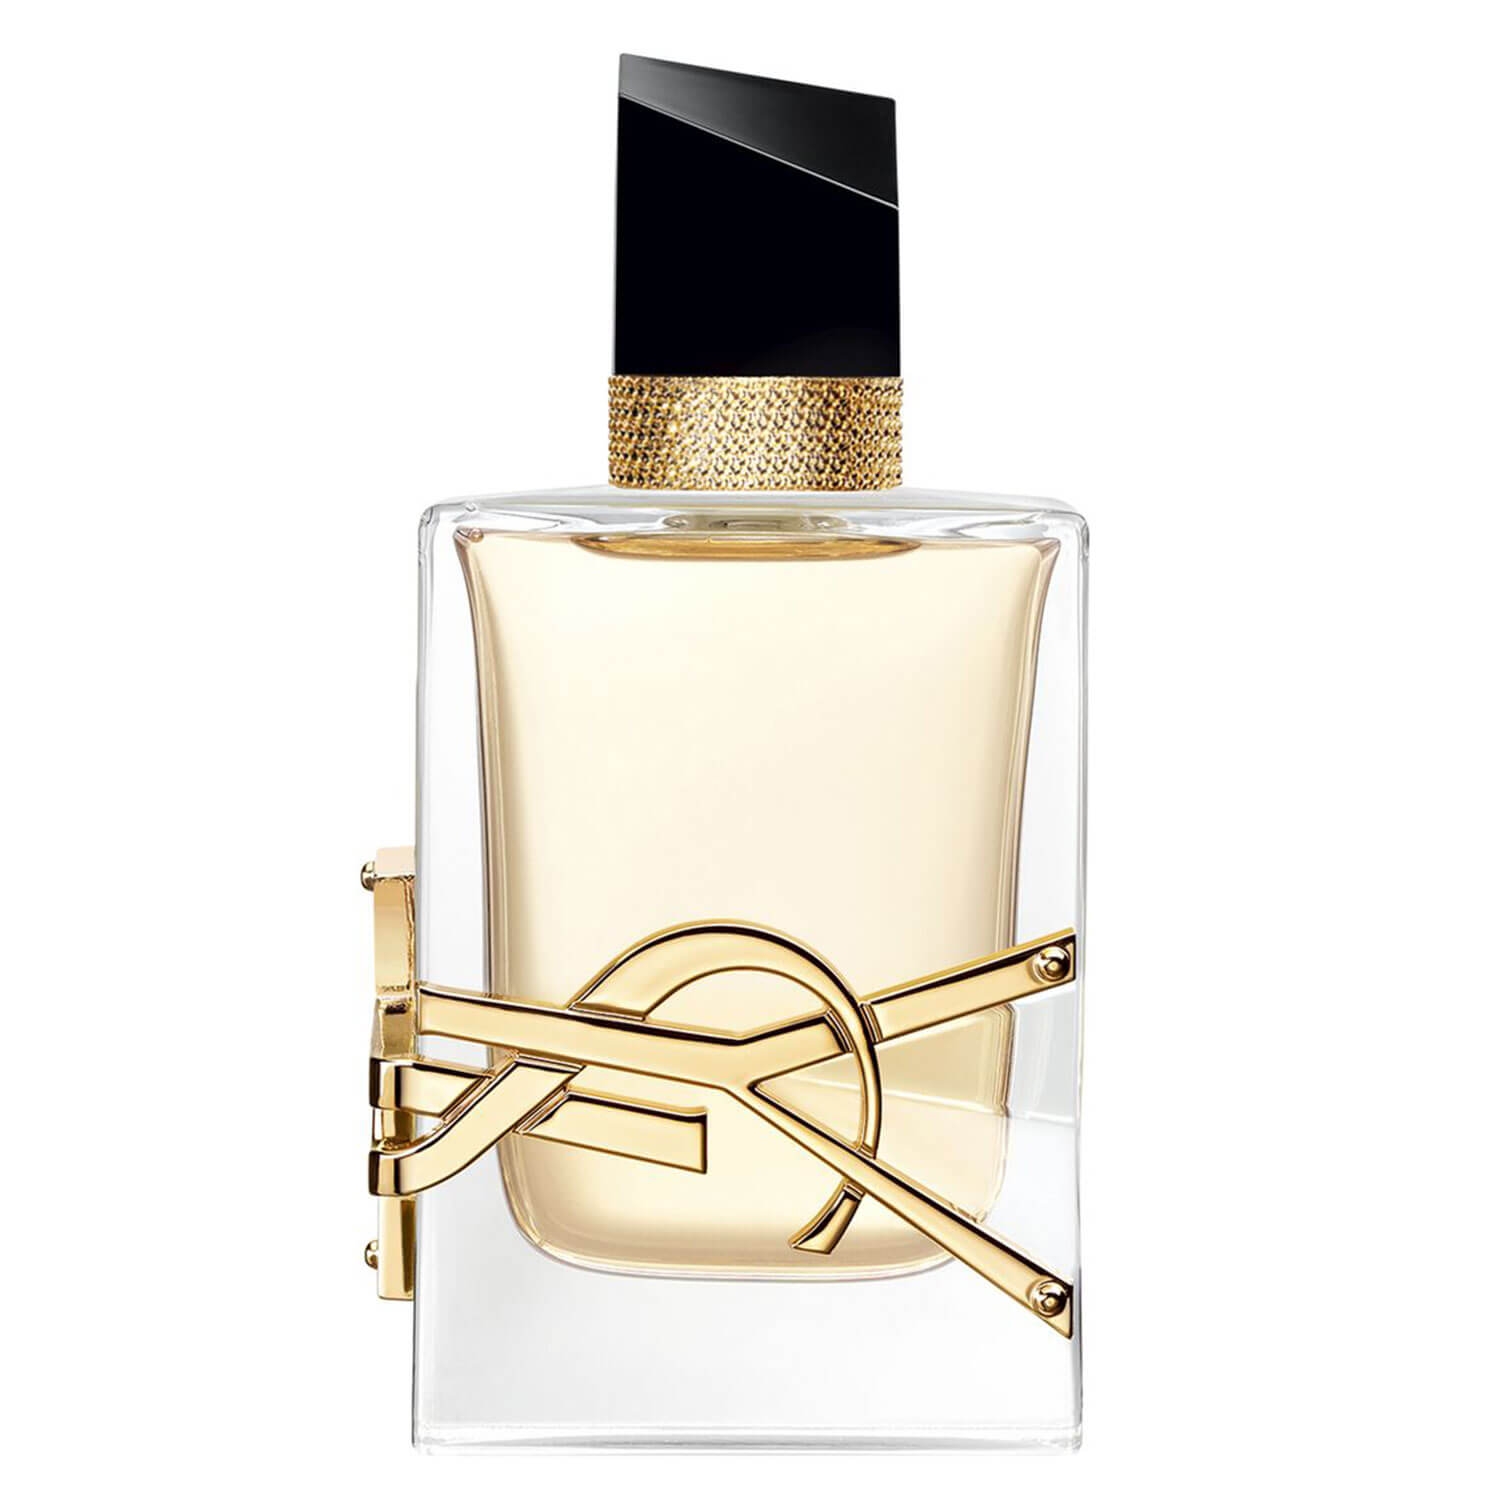 Produktbild von Libre - Eau de Parfum